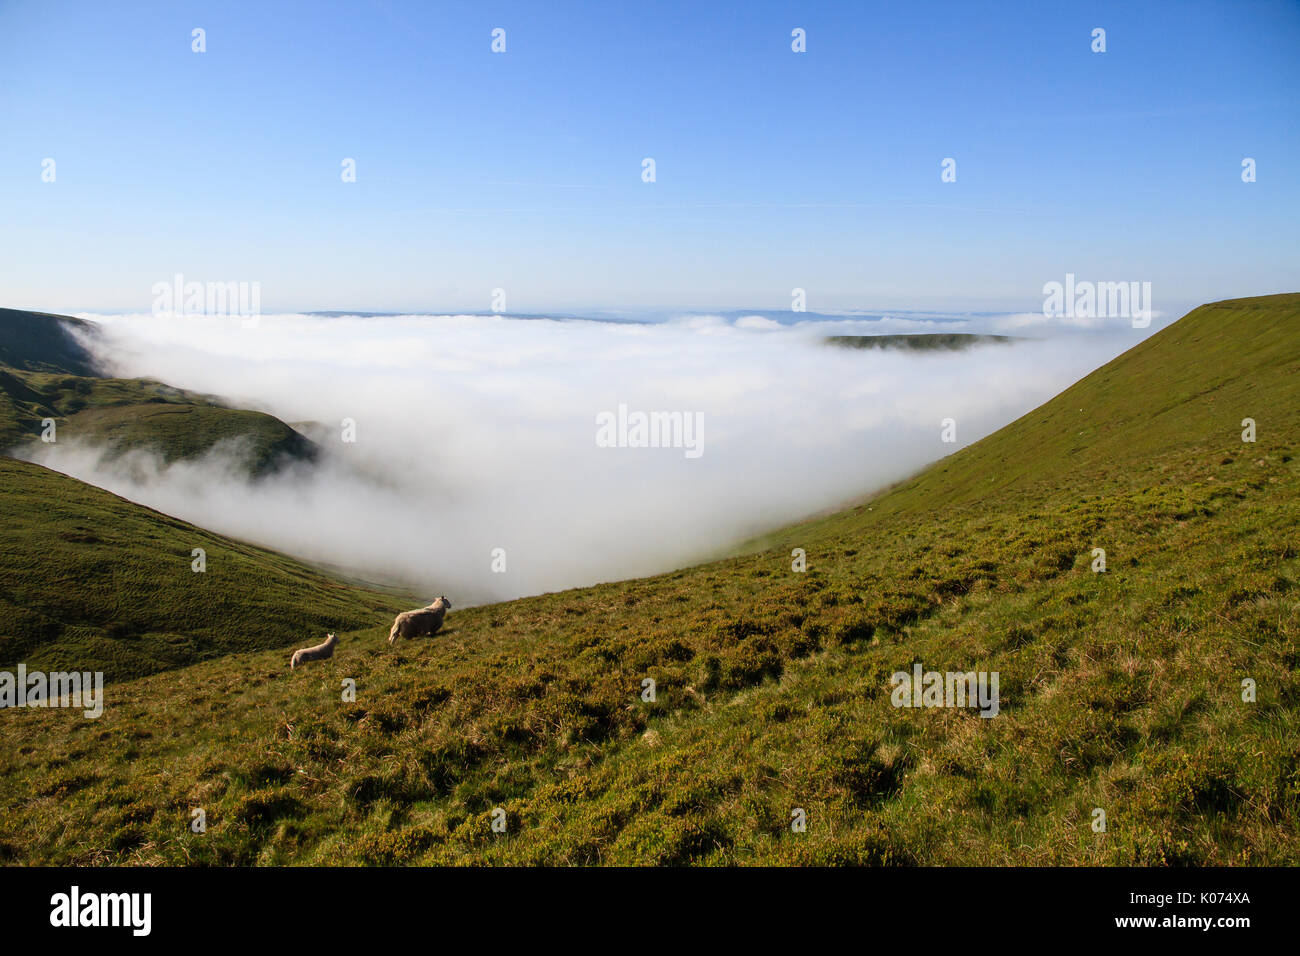 Deux moutons, une brebis et un agneau, en travers de la vallée, comme la brume s'élève de dessous, dans le parc national de Brecon Beacons, dans le sud du Pays de Galles, Royaume-Uni Banque D'Images